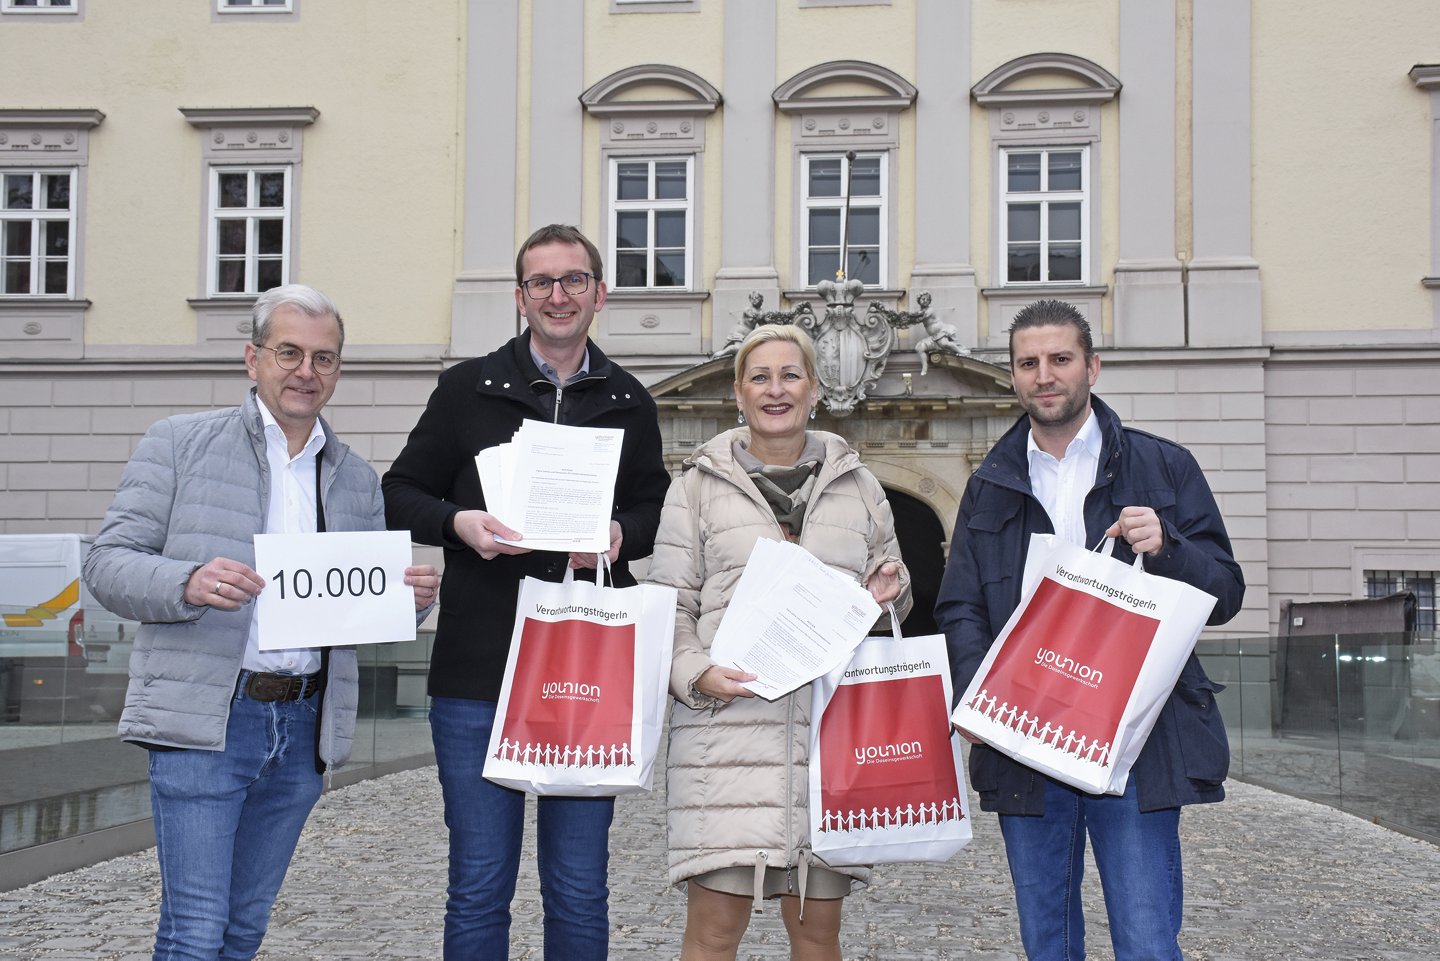 Die Gewerkschaft younion Oberösterreich übergab eine von 10.000 unterschriebene Petition an den Landtag. V.l.n.r. Peter Steinerberger, Christian Jedlinger, Karin Decker, Mario Kalod@younion OÖ.